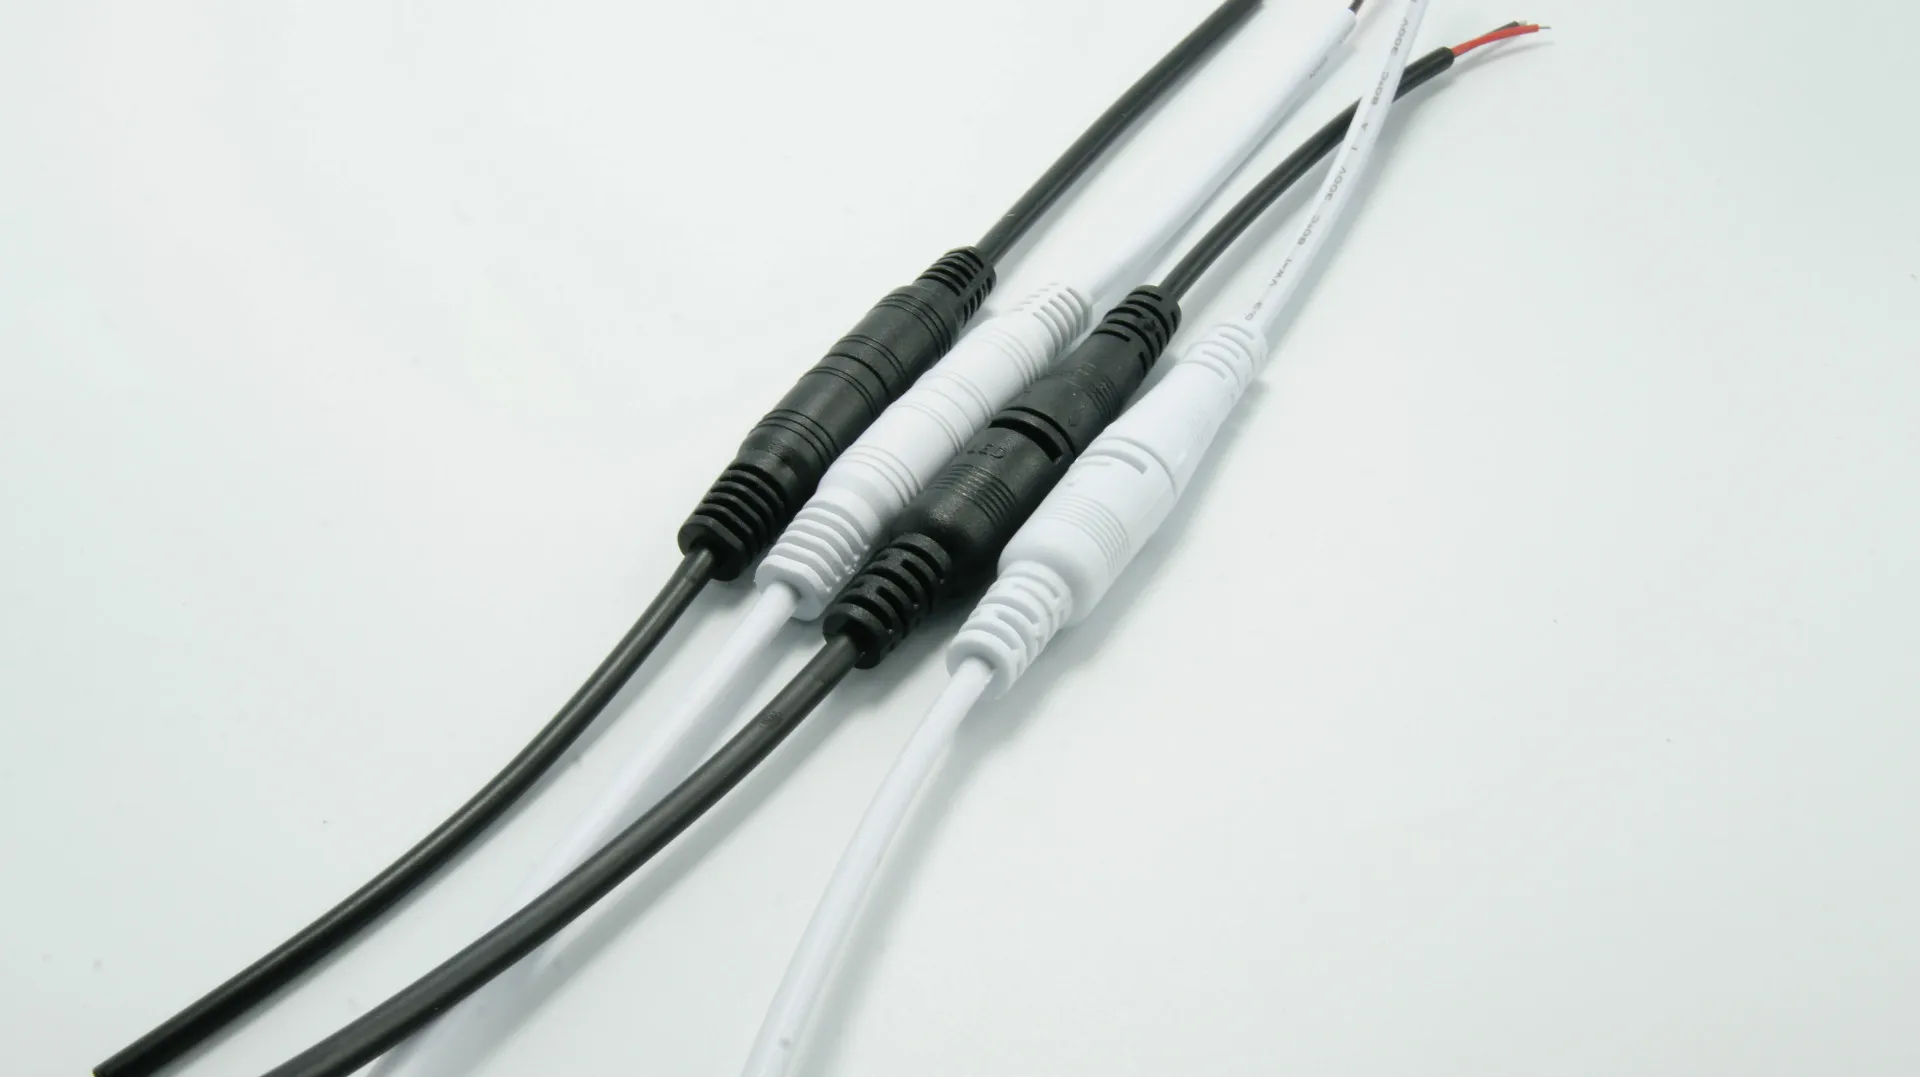 Câble d'extension 5 broches pour UM7 (2 connecteurs)